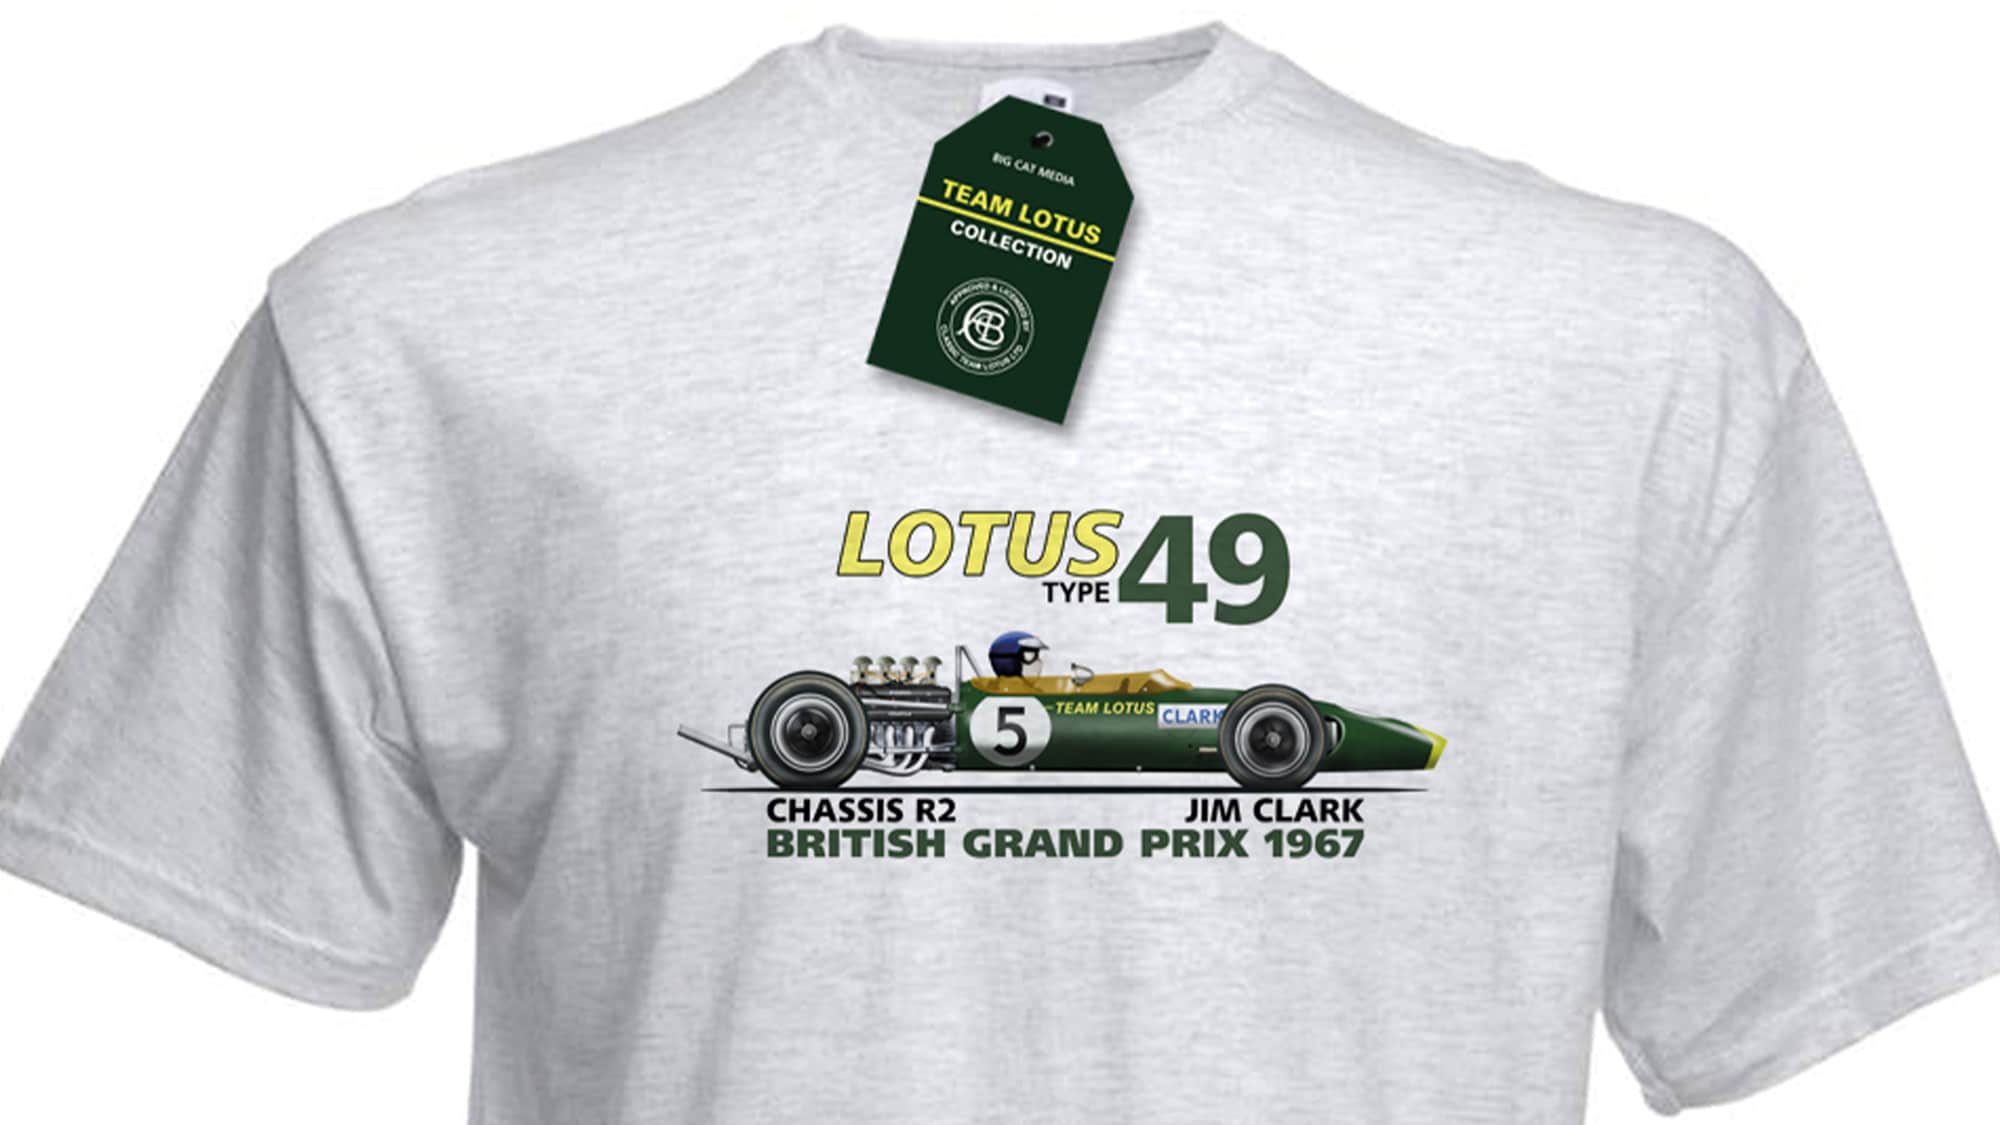 Lotus 49 t-shirt